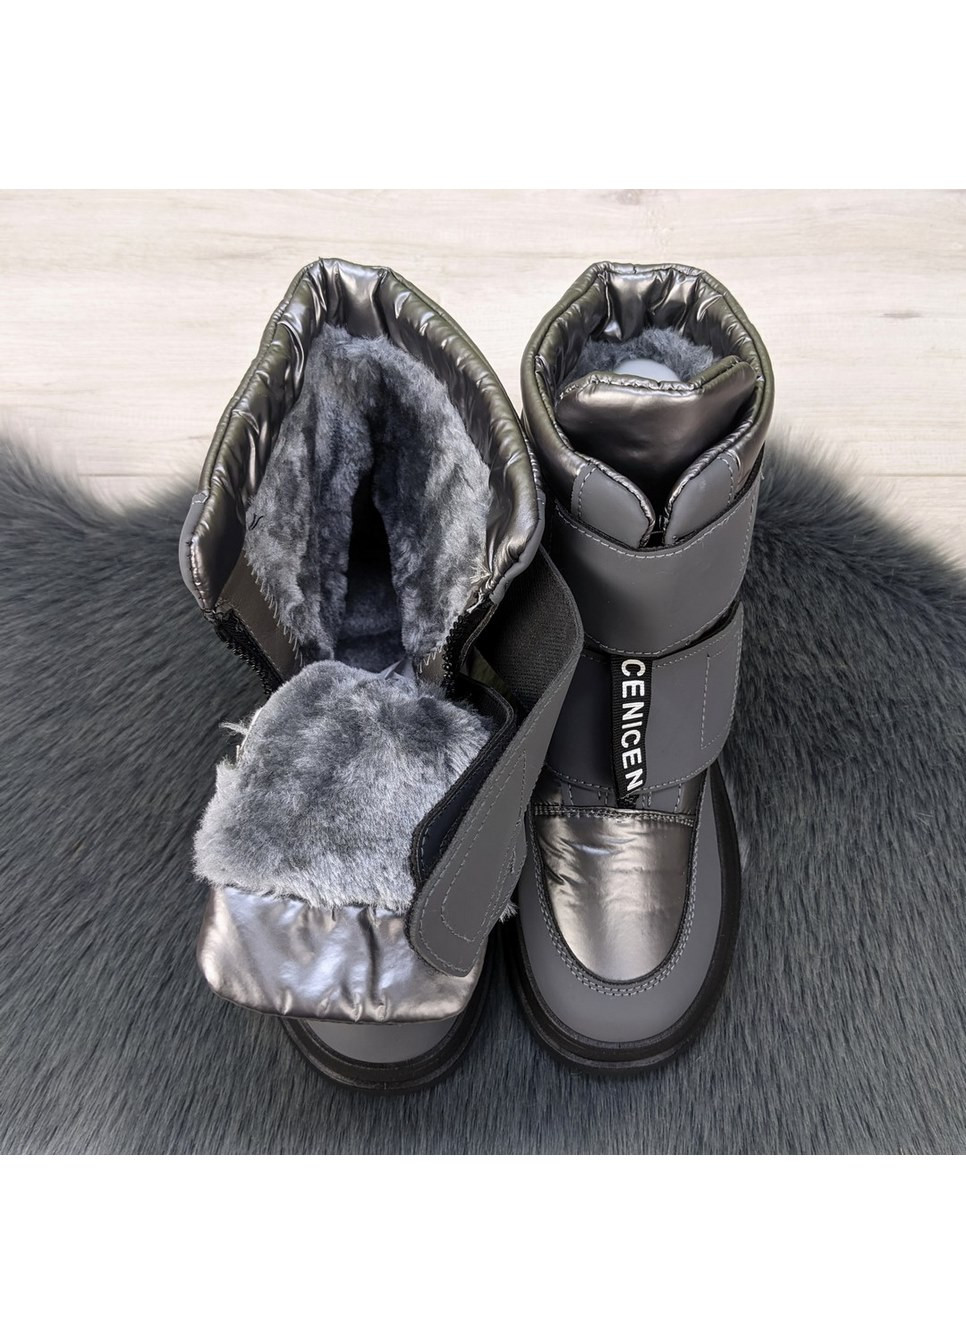 Зимние ботинки дутики женские на меху LM тканевые